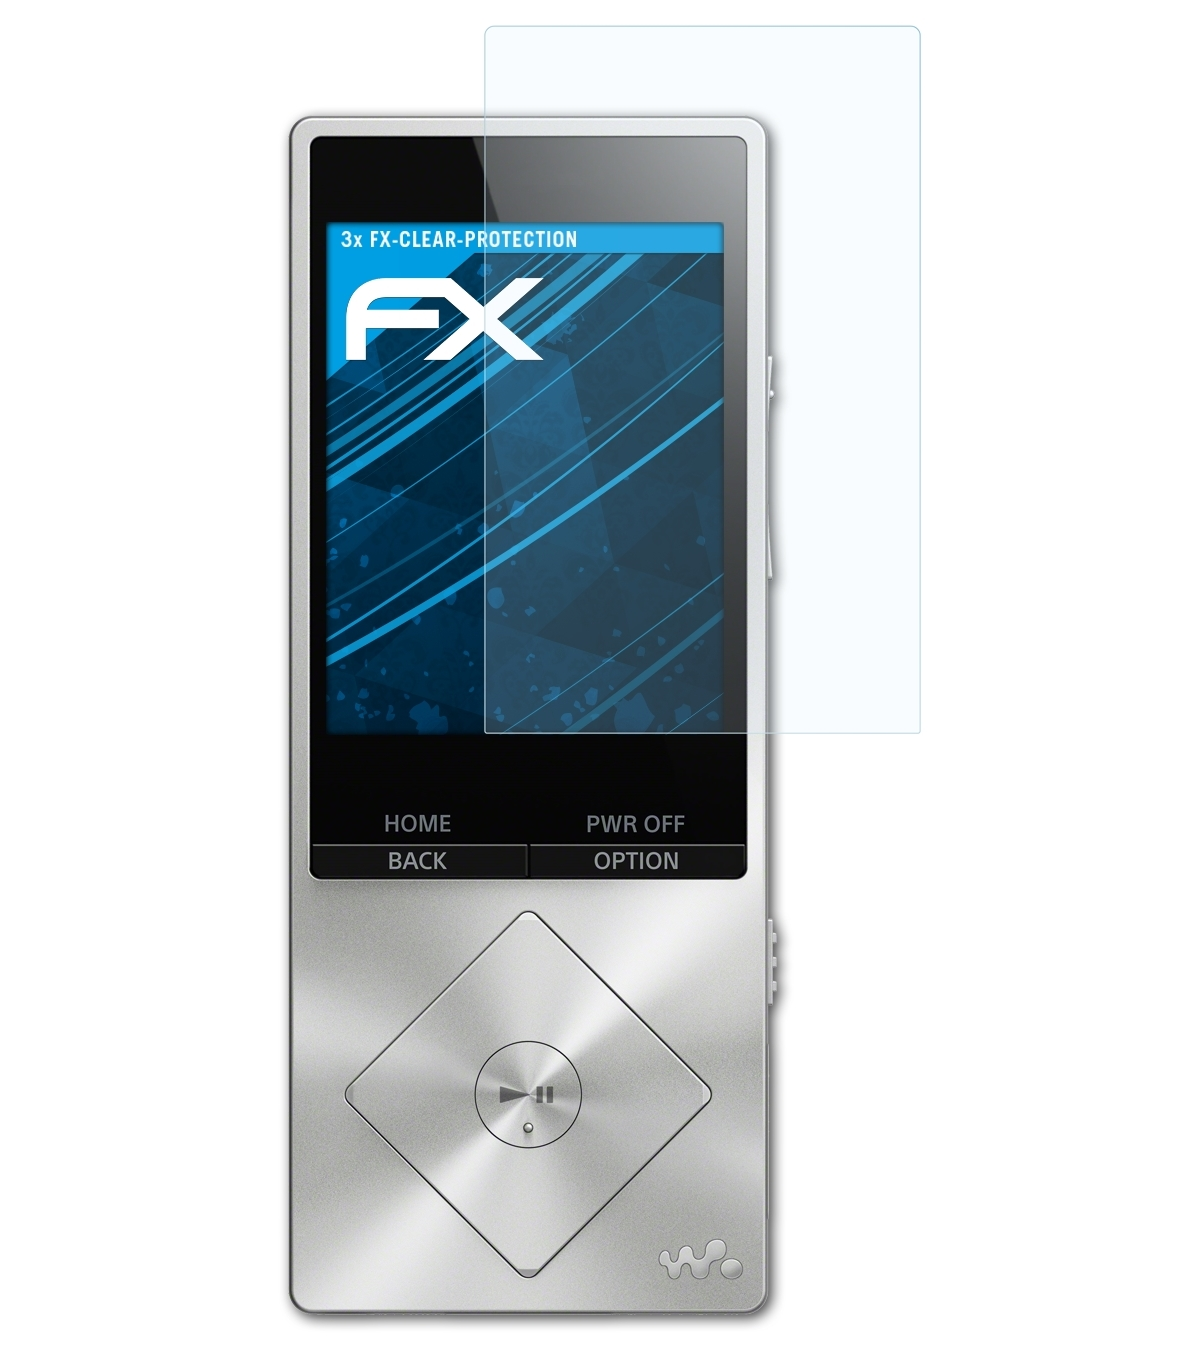 NWZ-A15) 3x Sony Walkman Displayschutz(für FX-Clear ATFOLIX